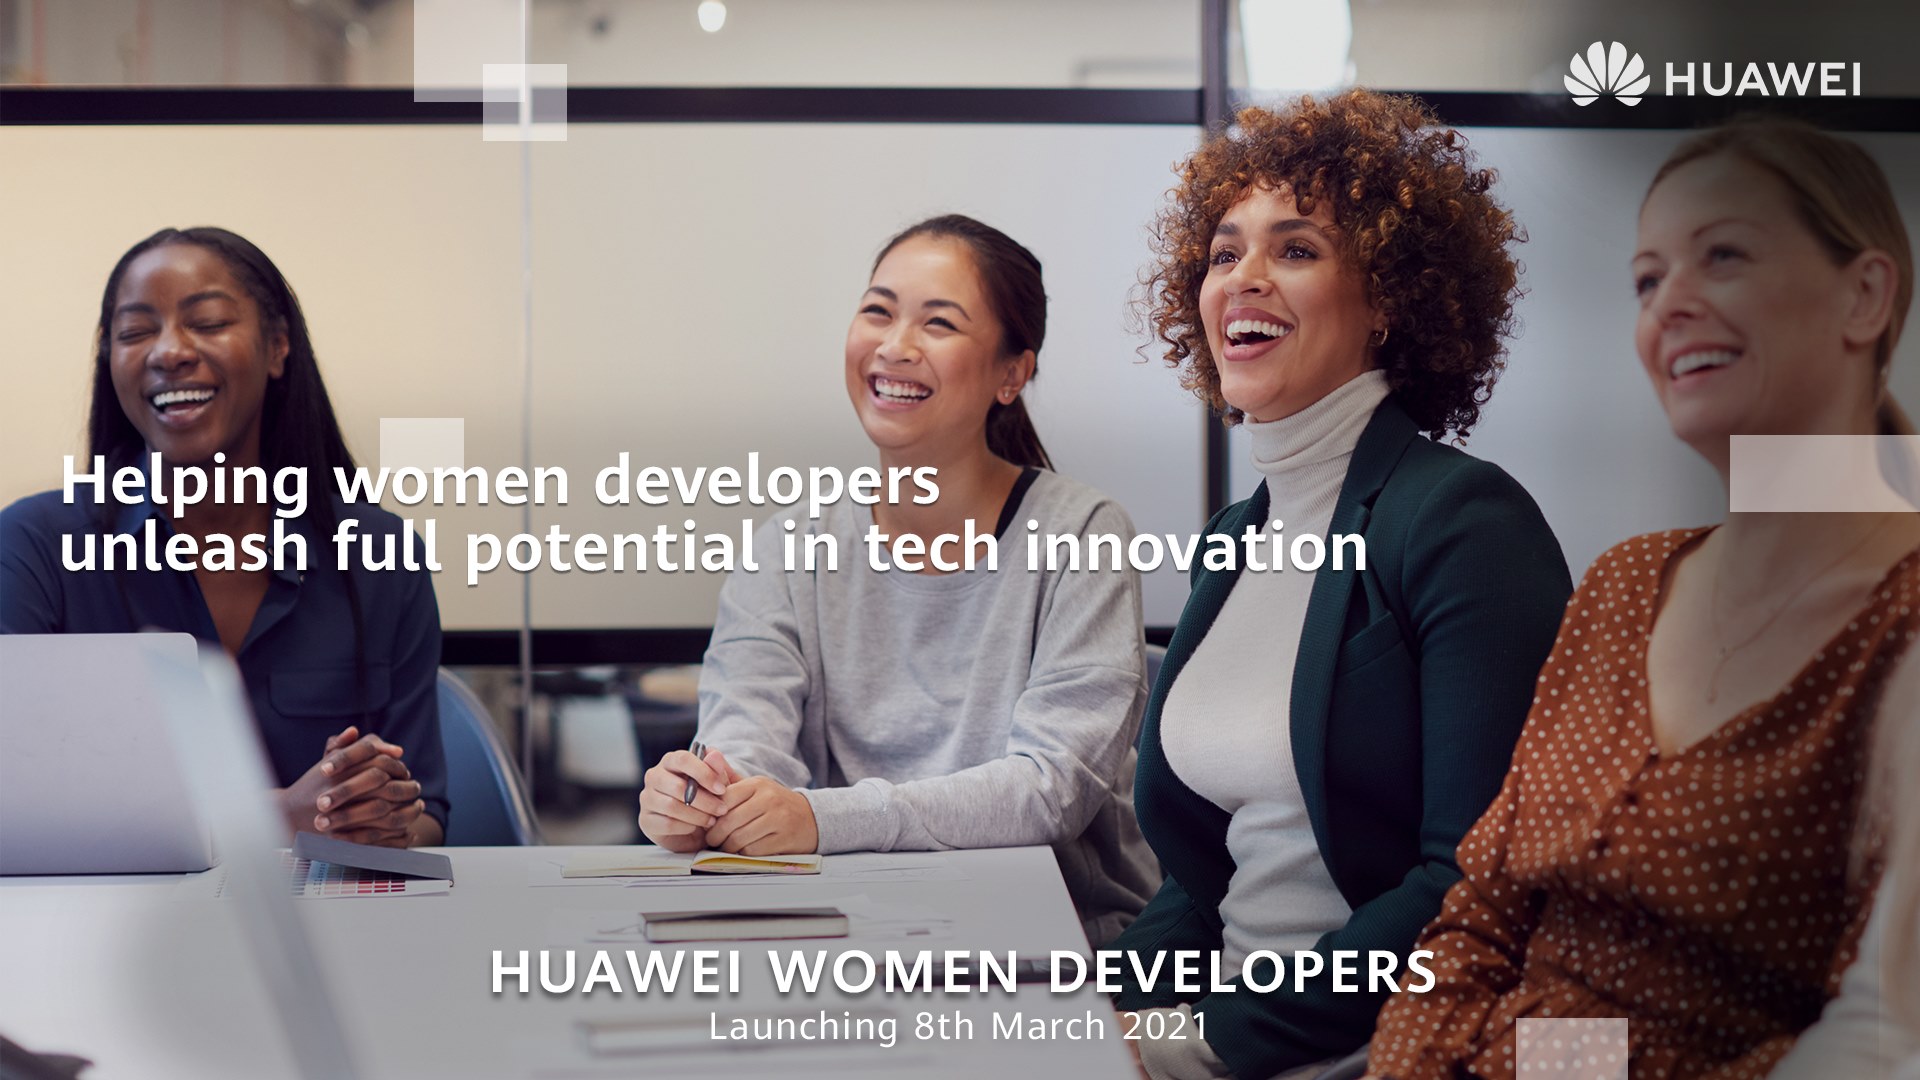 HUAWEI Women Developers: Chương trình khuyến khích phụ nữ tham gia đổi mới công nghệ